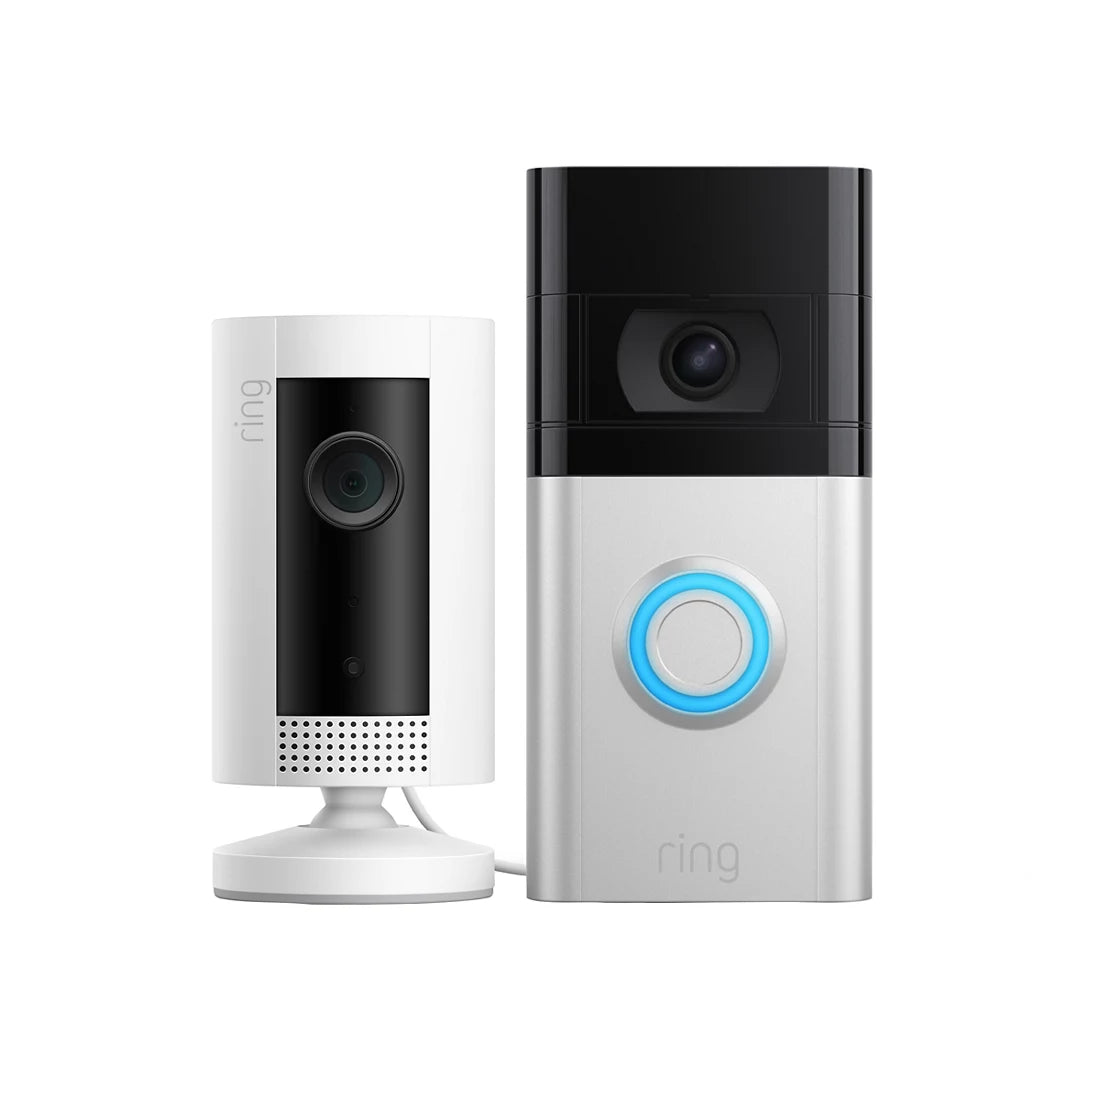 RING - Doorbell 3 Plus and Indoor Camera *Open Box*